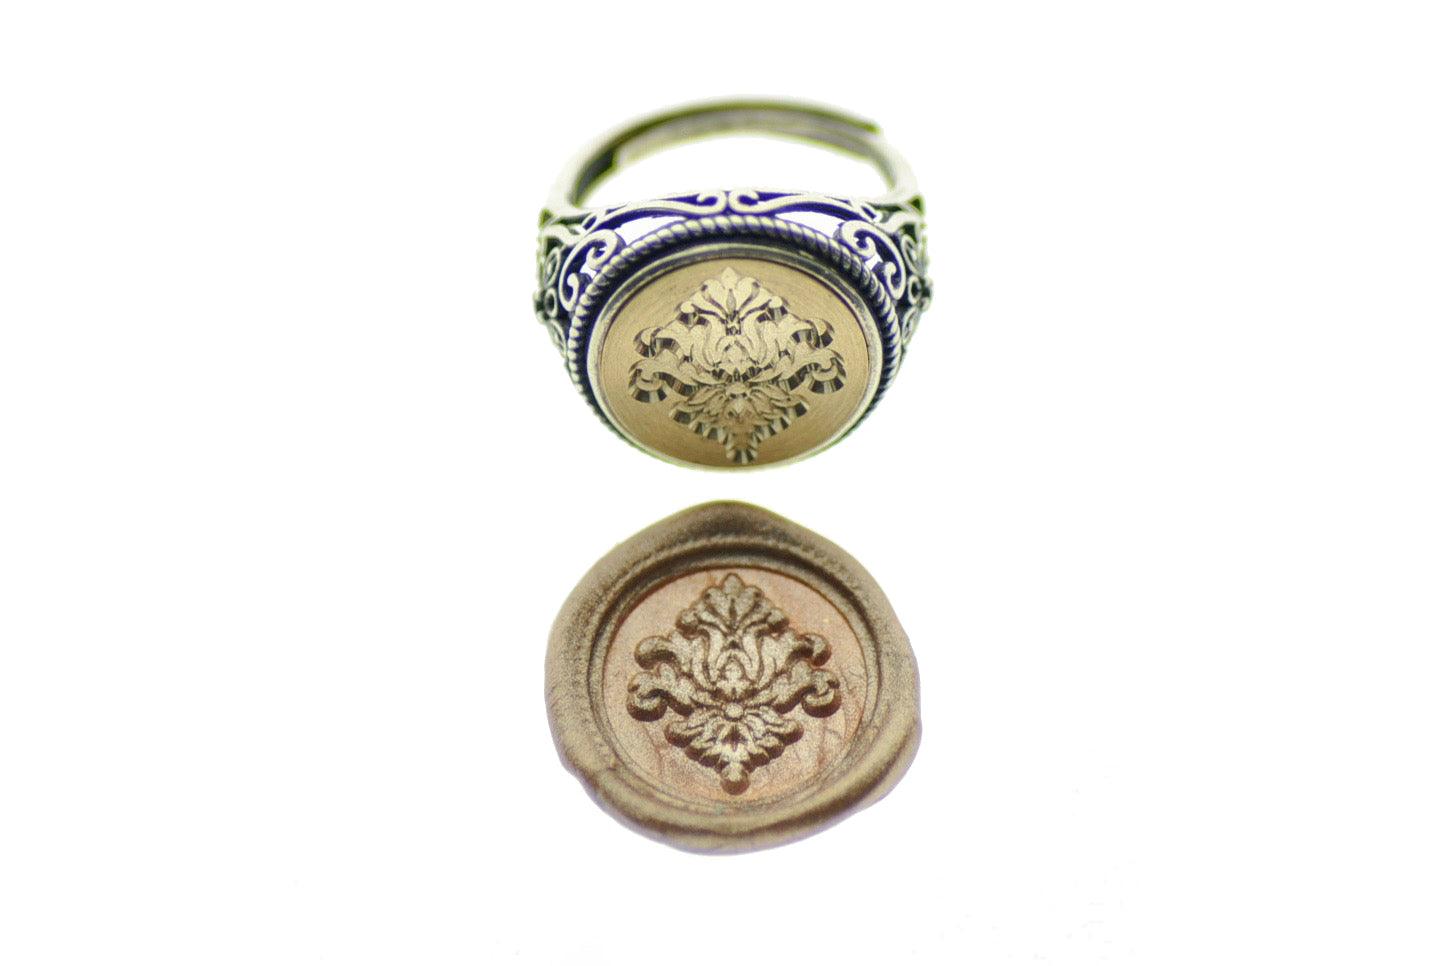 Victorian Filigree Deco Signet Ring - Backtozero B20 - 14f, 14mm, 14mm ring, accessory, Deco, Decorative, fancy, her, jewelry, ring, signet ring, size 10, size 5, size 6, size 7, size 8, size 9, Victorian, wax seal, wax seal stamp